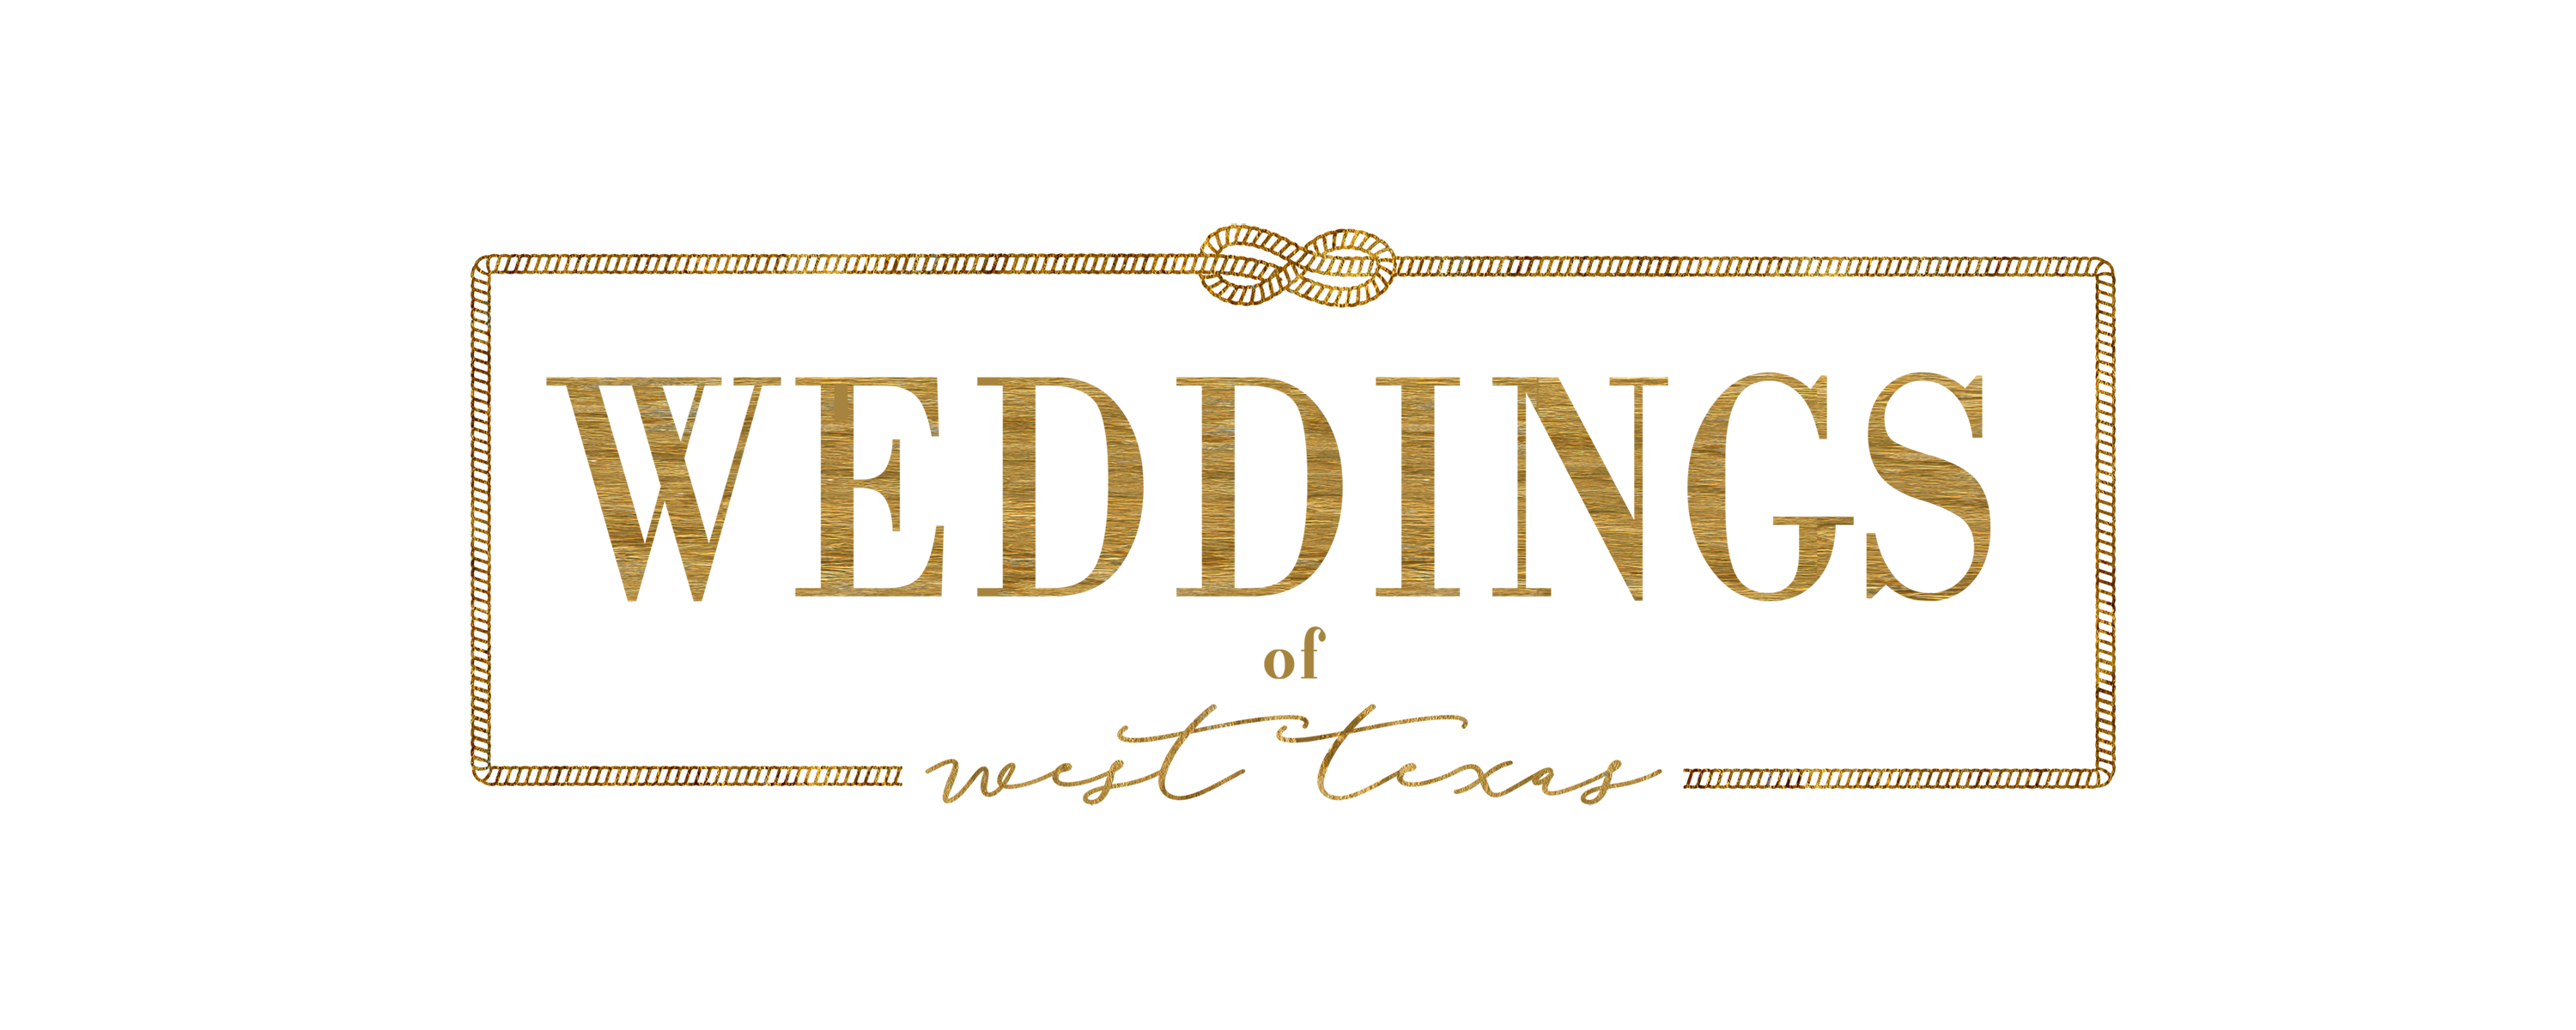 Weddings of West Texas